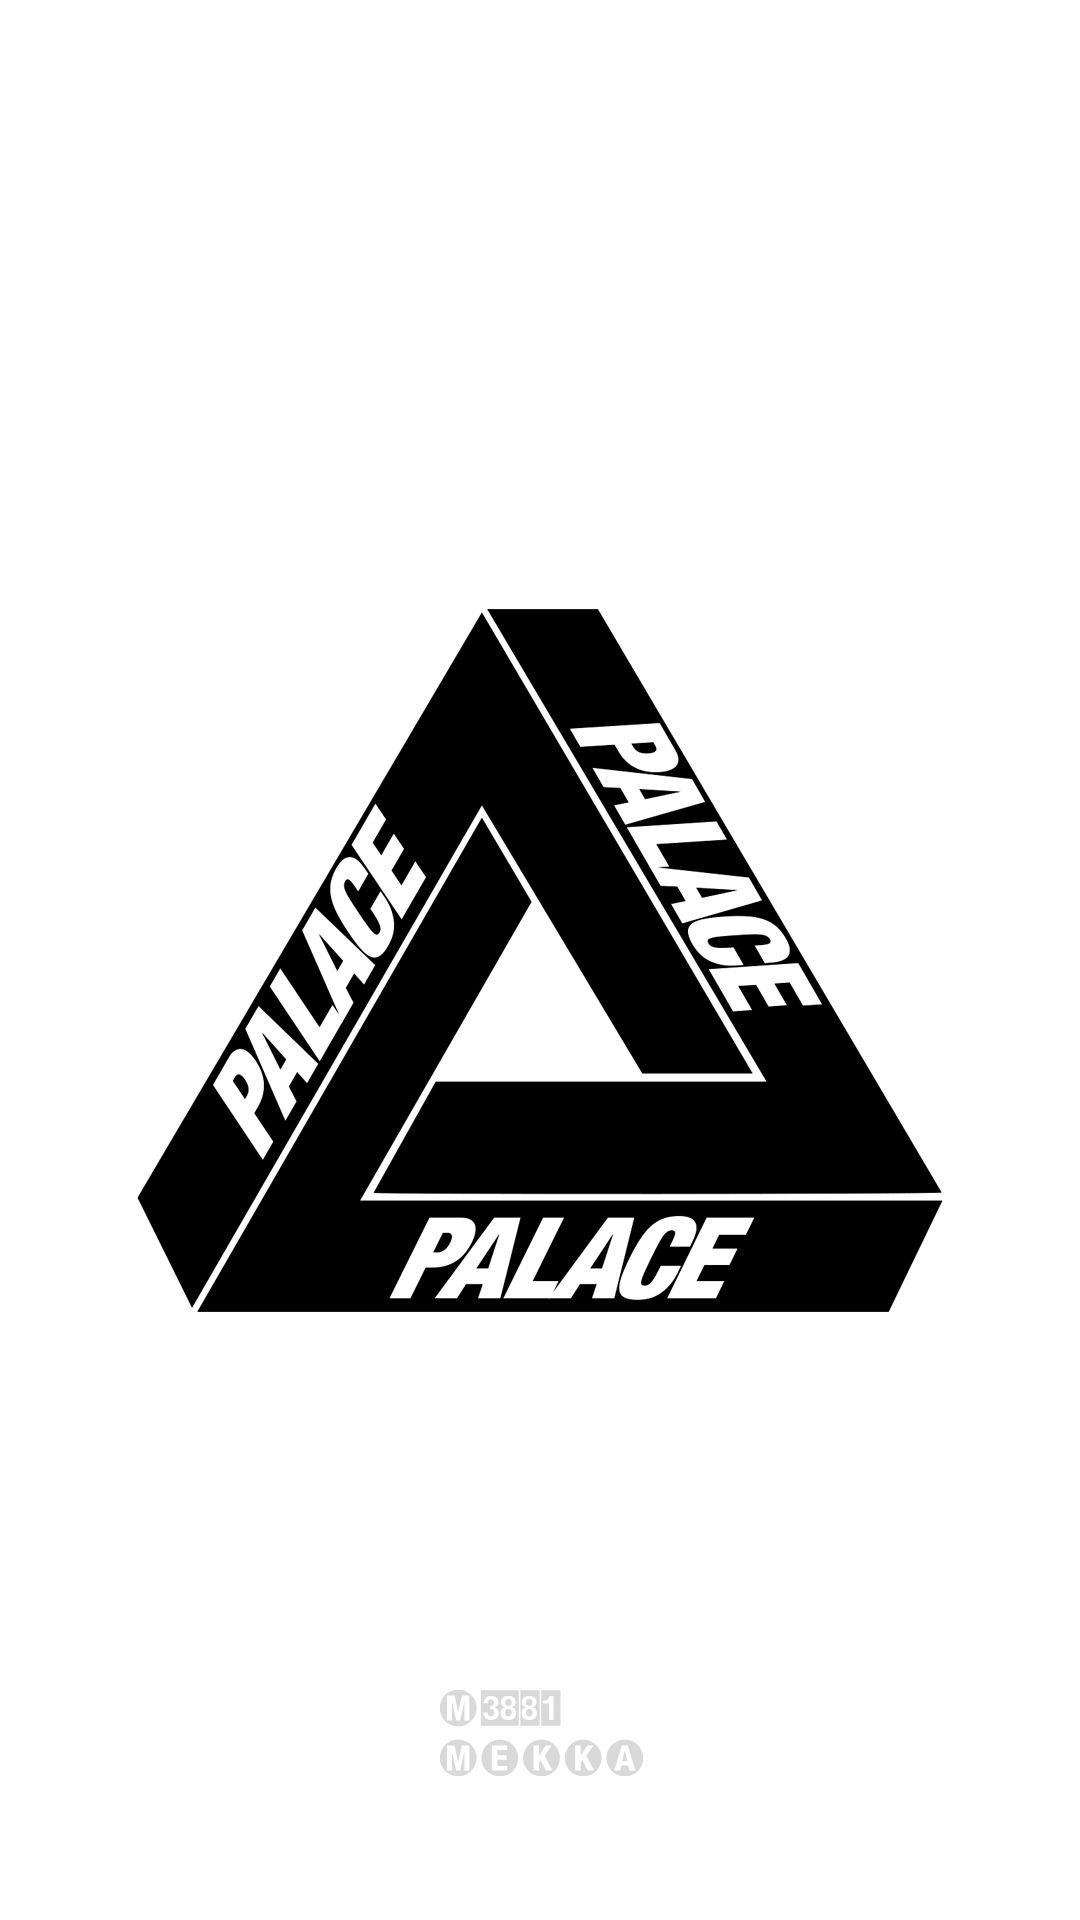 Palace Skateboards M MEKKA GALLERY